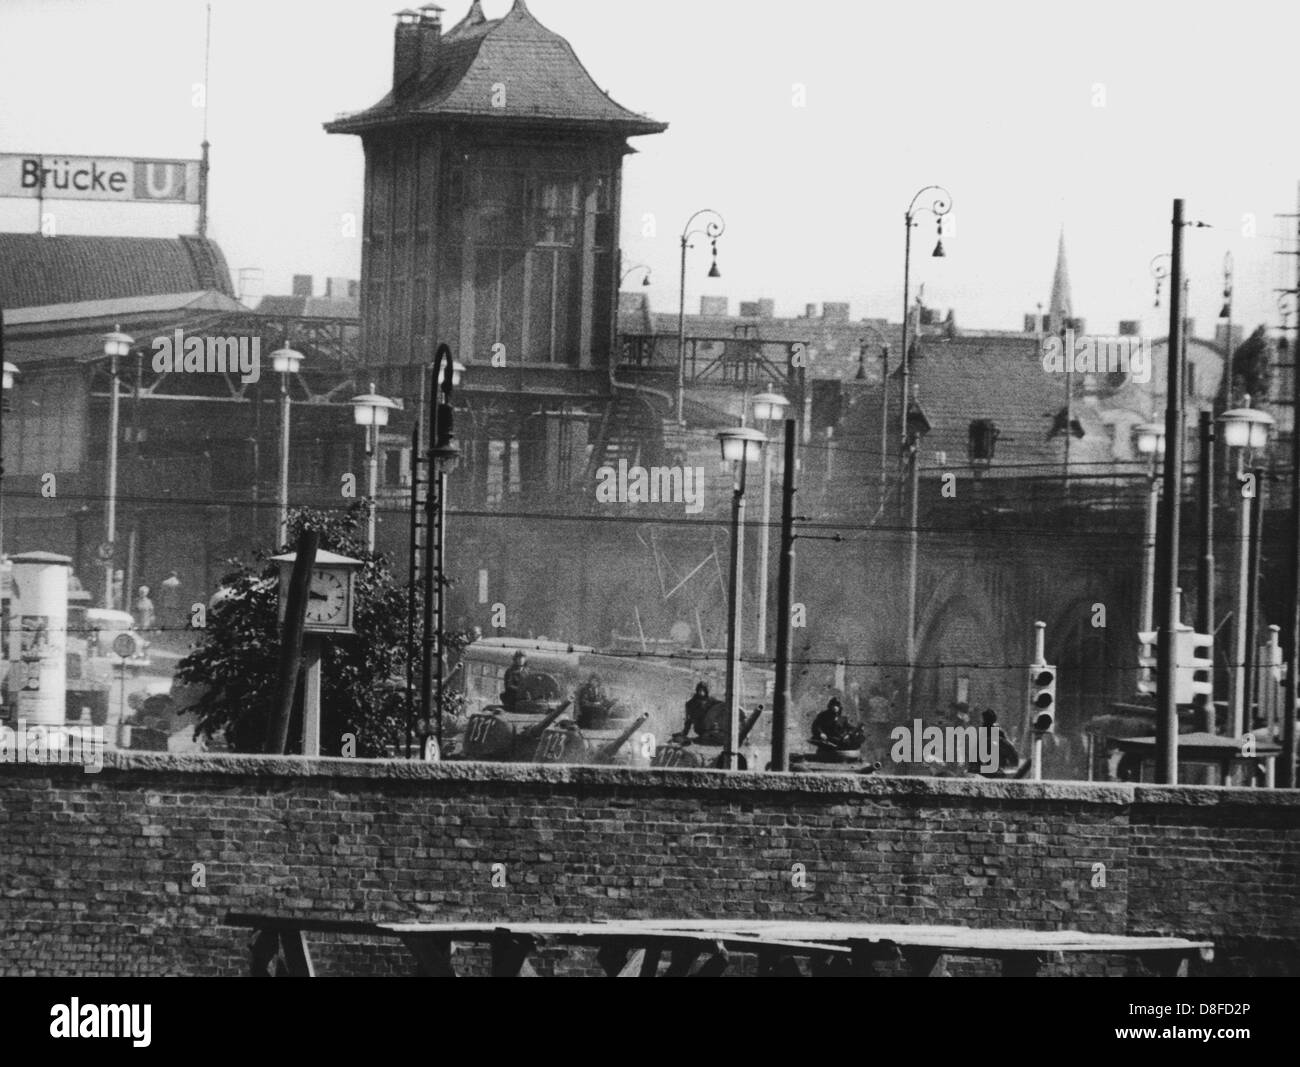 Carri armati sovietici puntando su Berlino Ovest nella foto a Varsavia il ponte di Berlino Est, DDR, 13 agosto 1961. Le autorità sovietiche avevano impedito forzatamente i confini di Berlino. Foto Stock